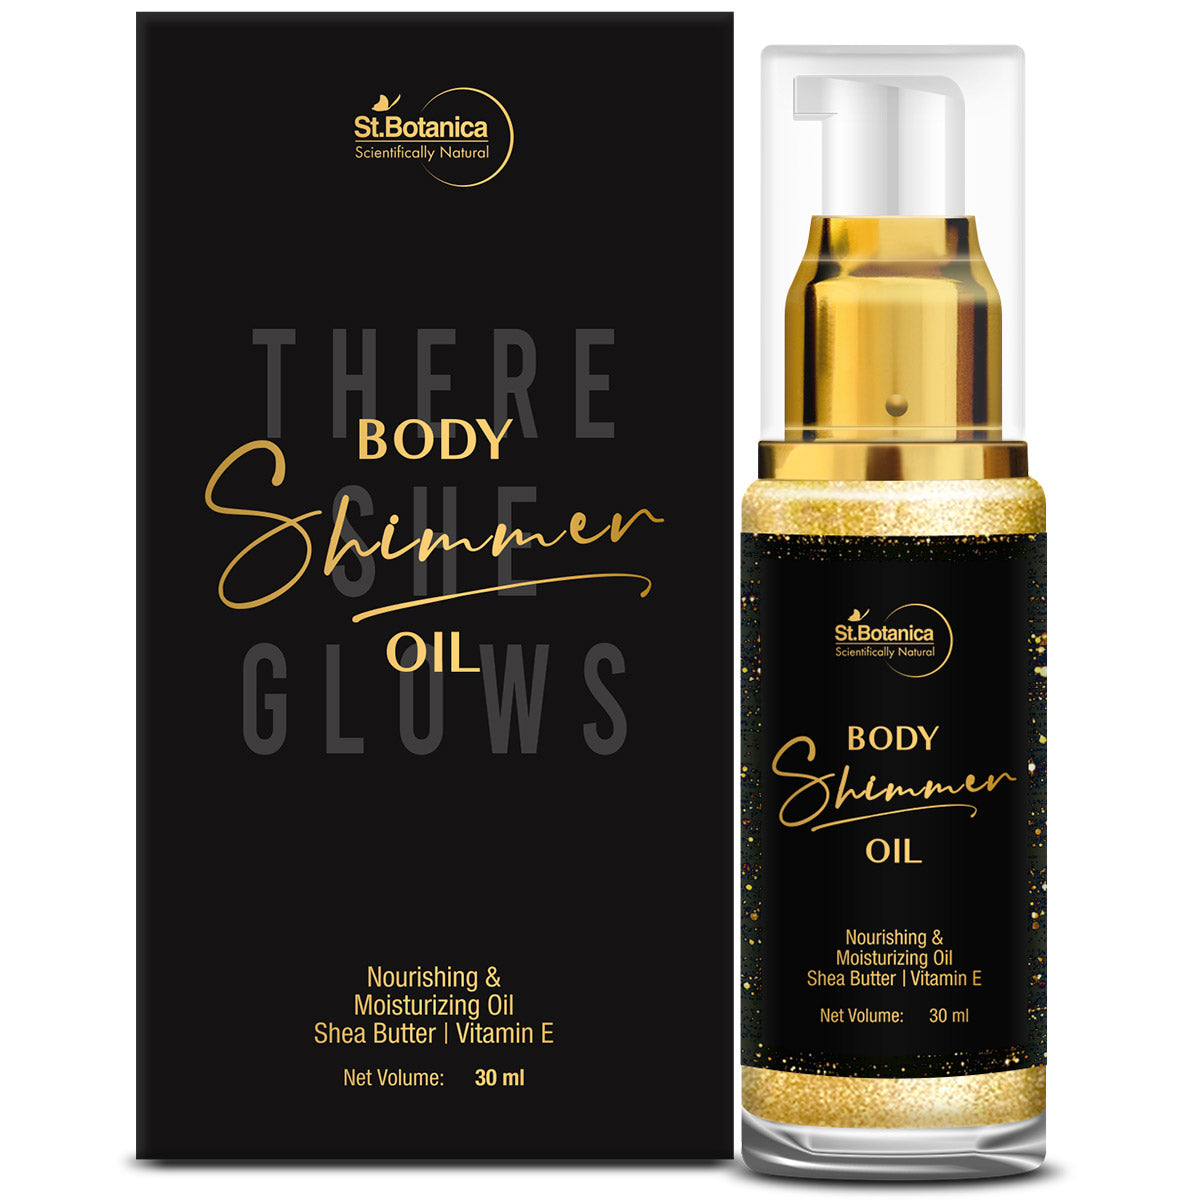 St.Botanica Body Shimmer Oil - Nourishing & Moisturizing Oil With Shea Butter, Vitamin E, 30 ml